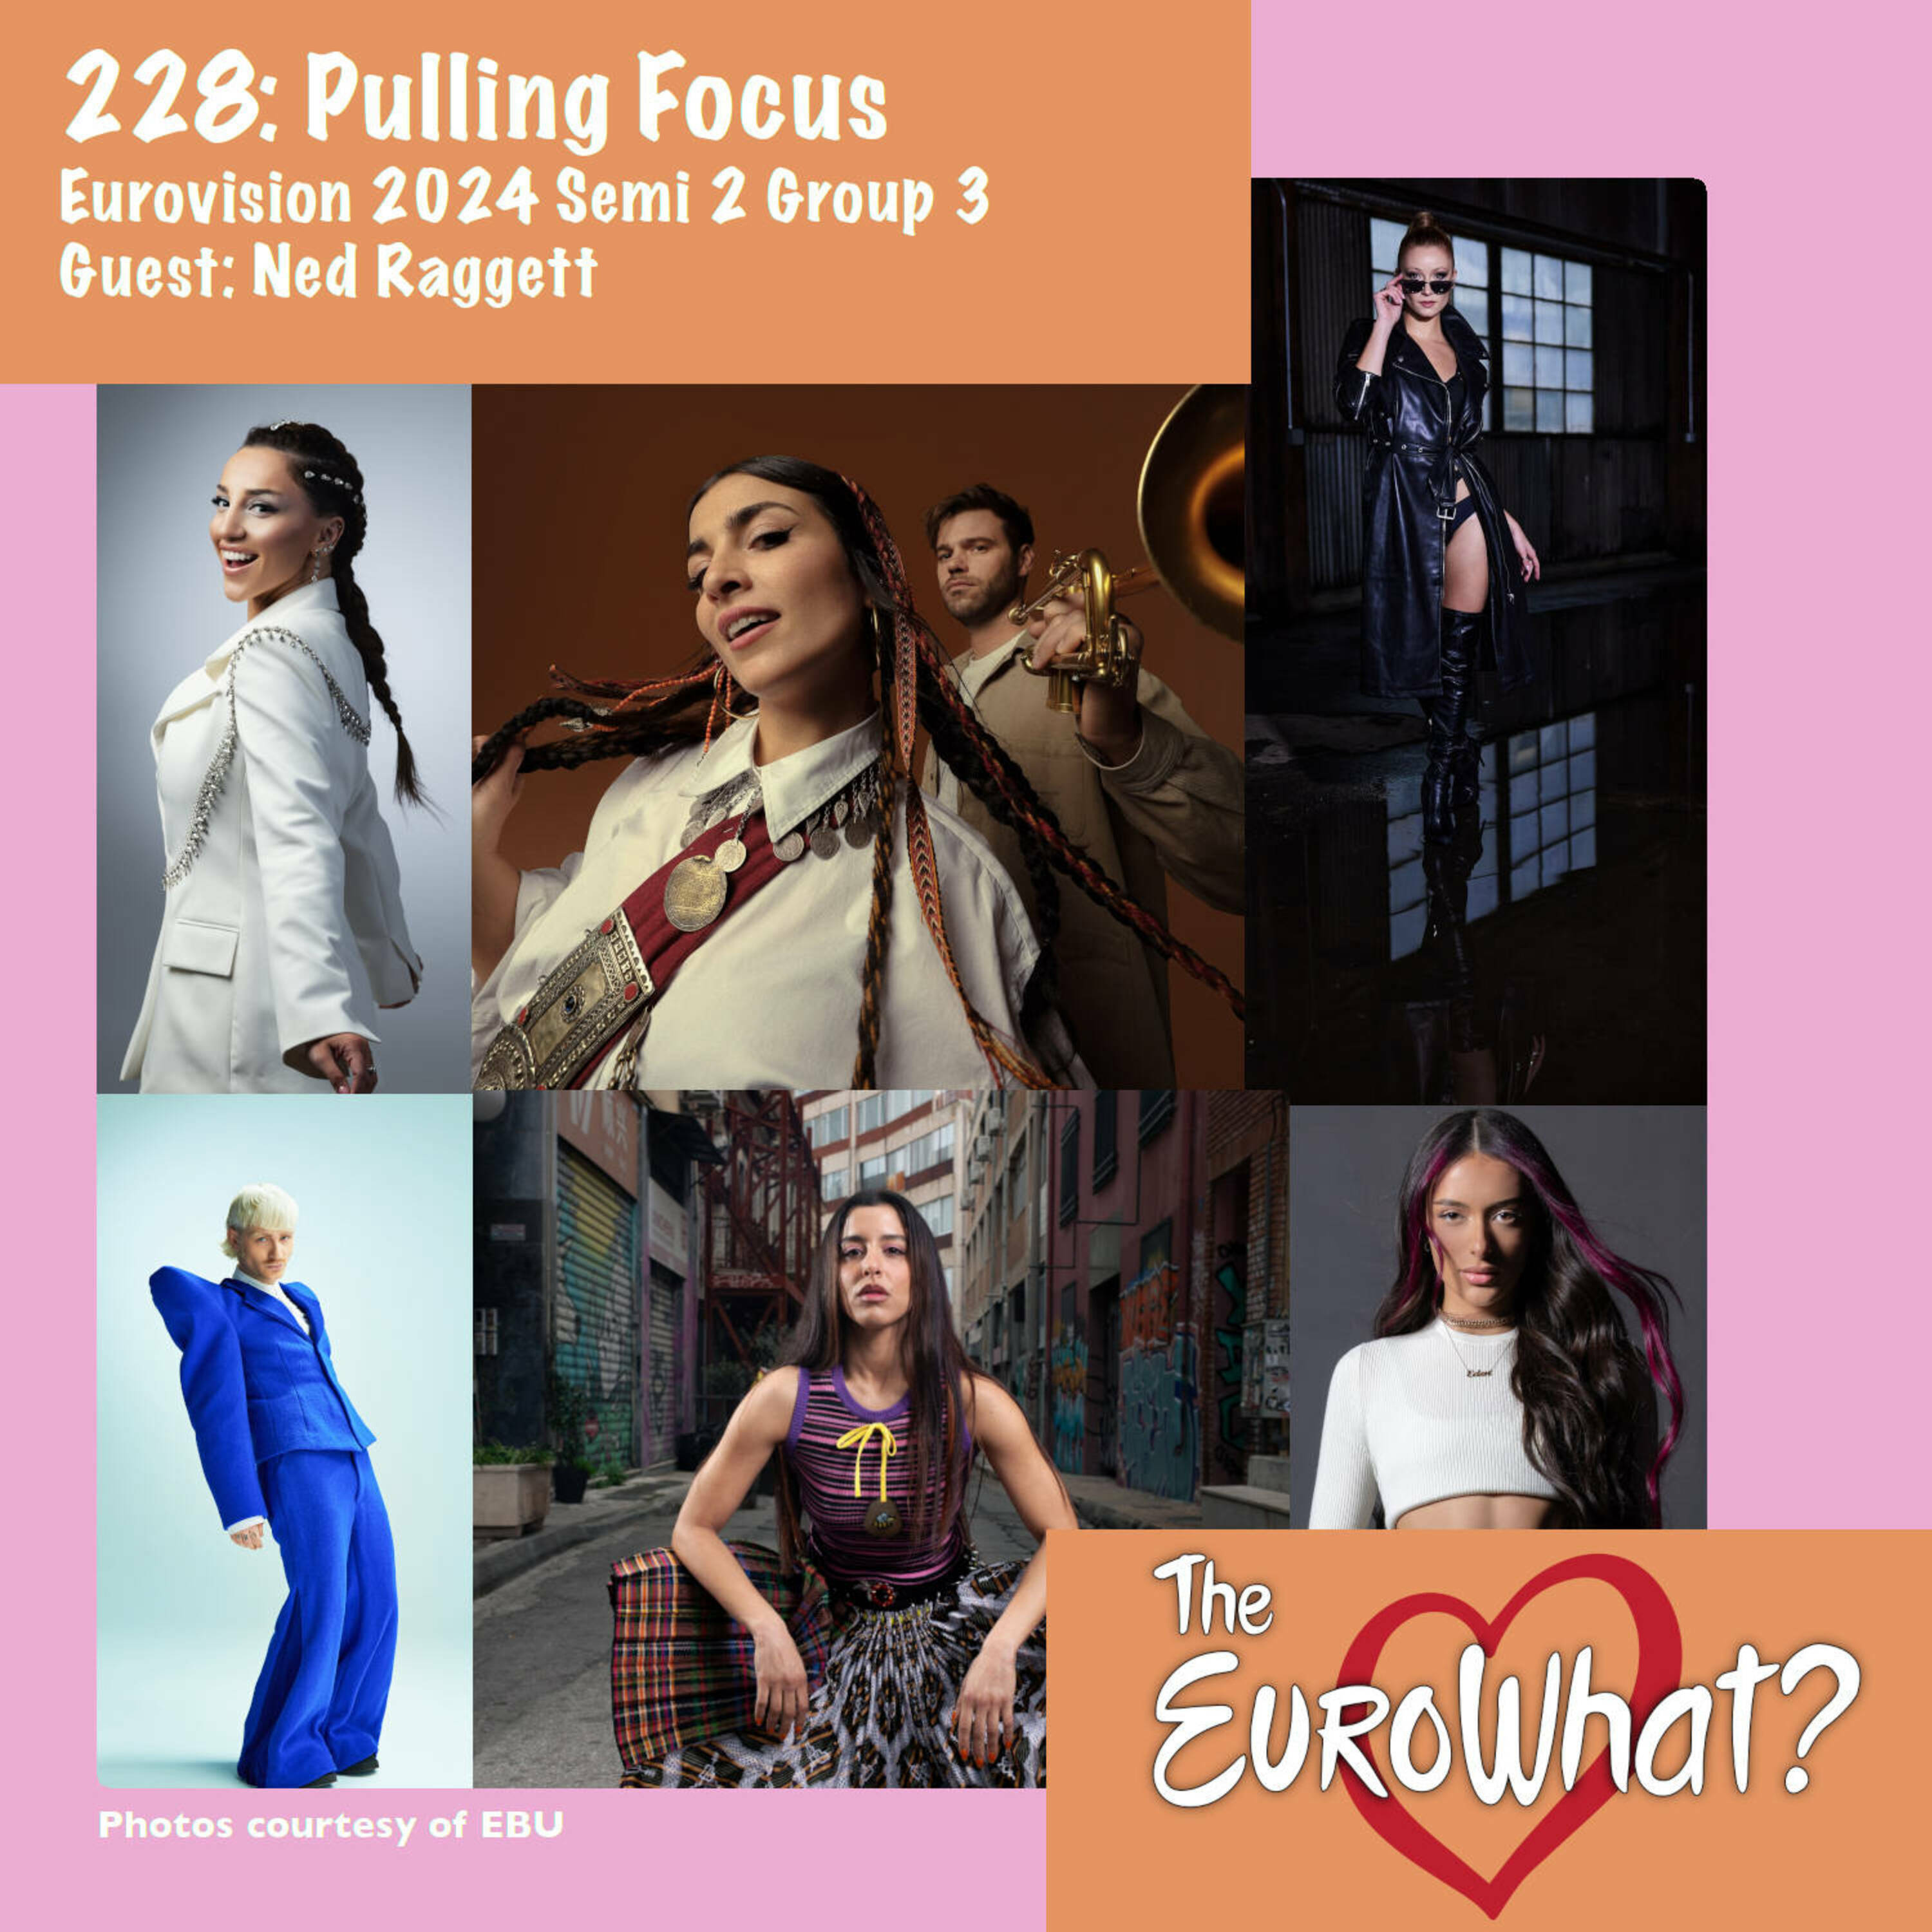 Episode 228: Pulling Focus